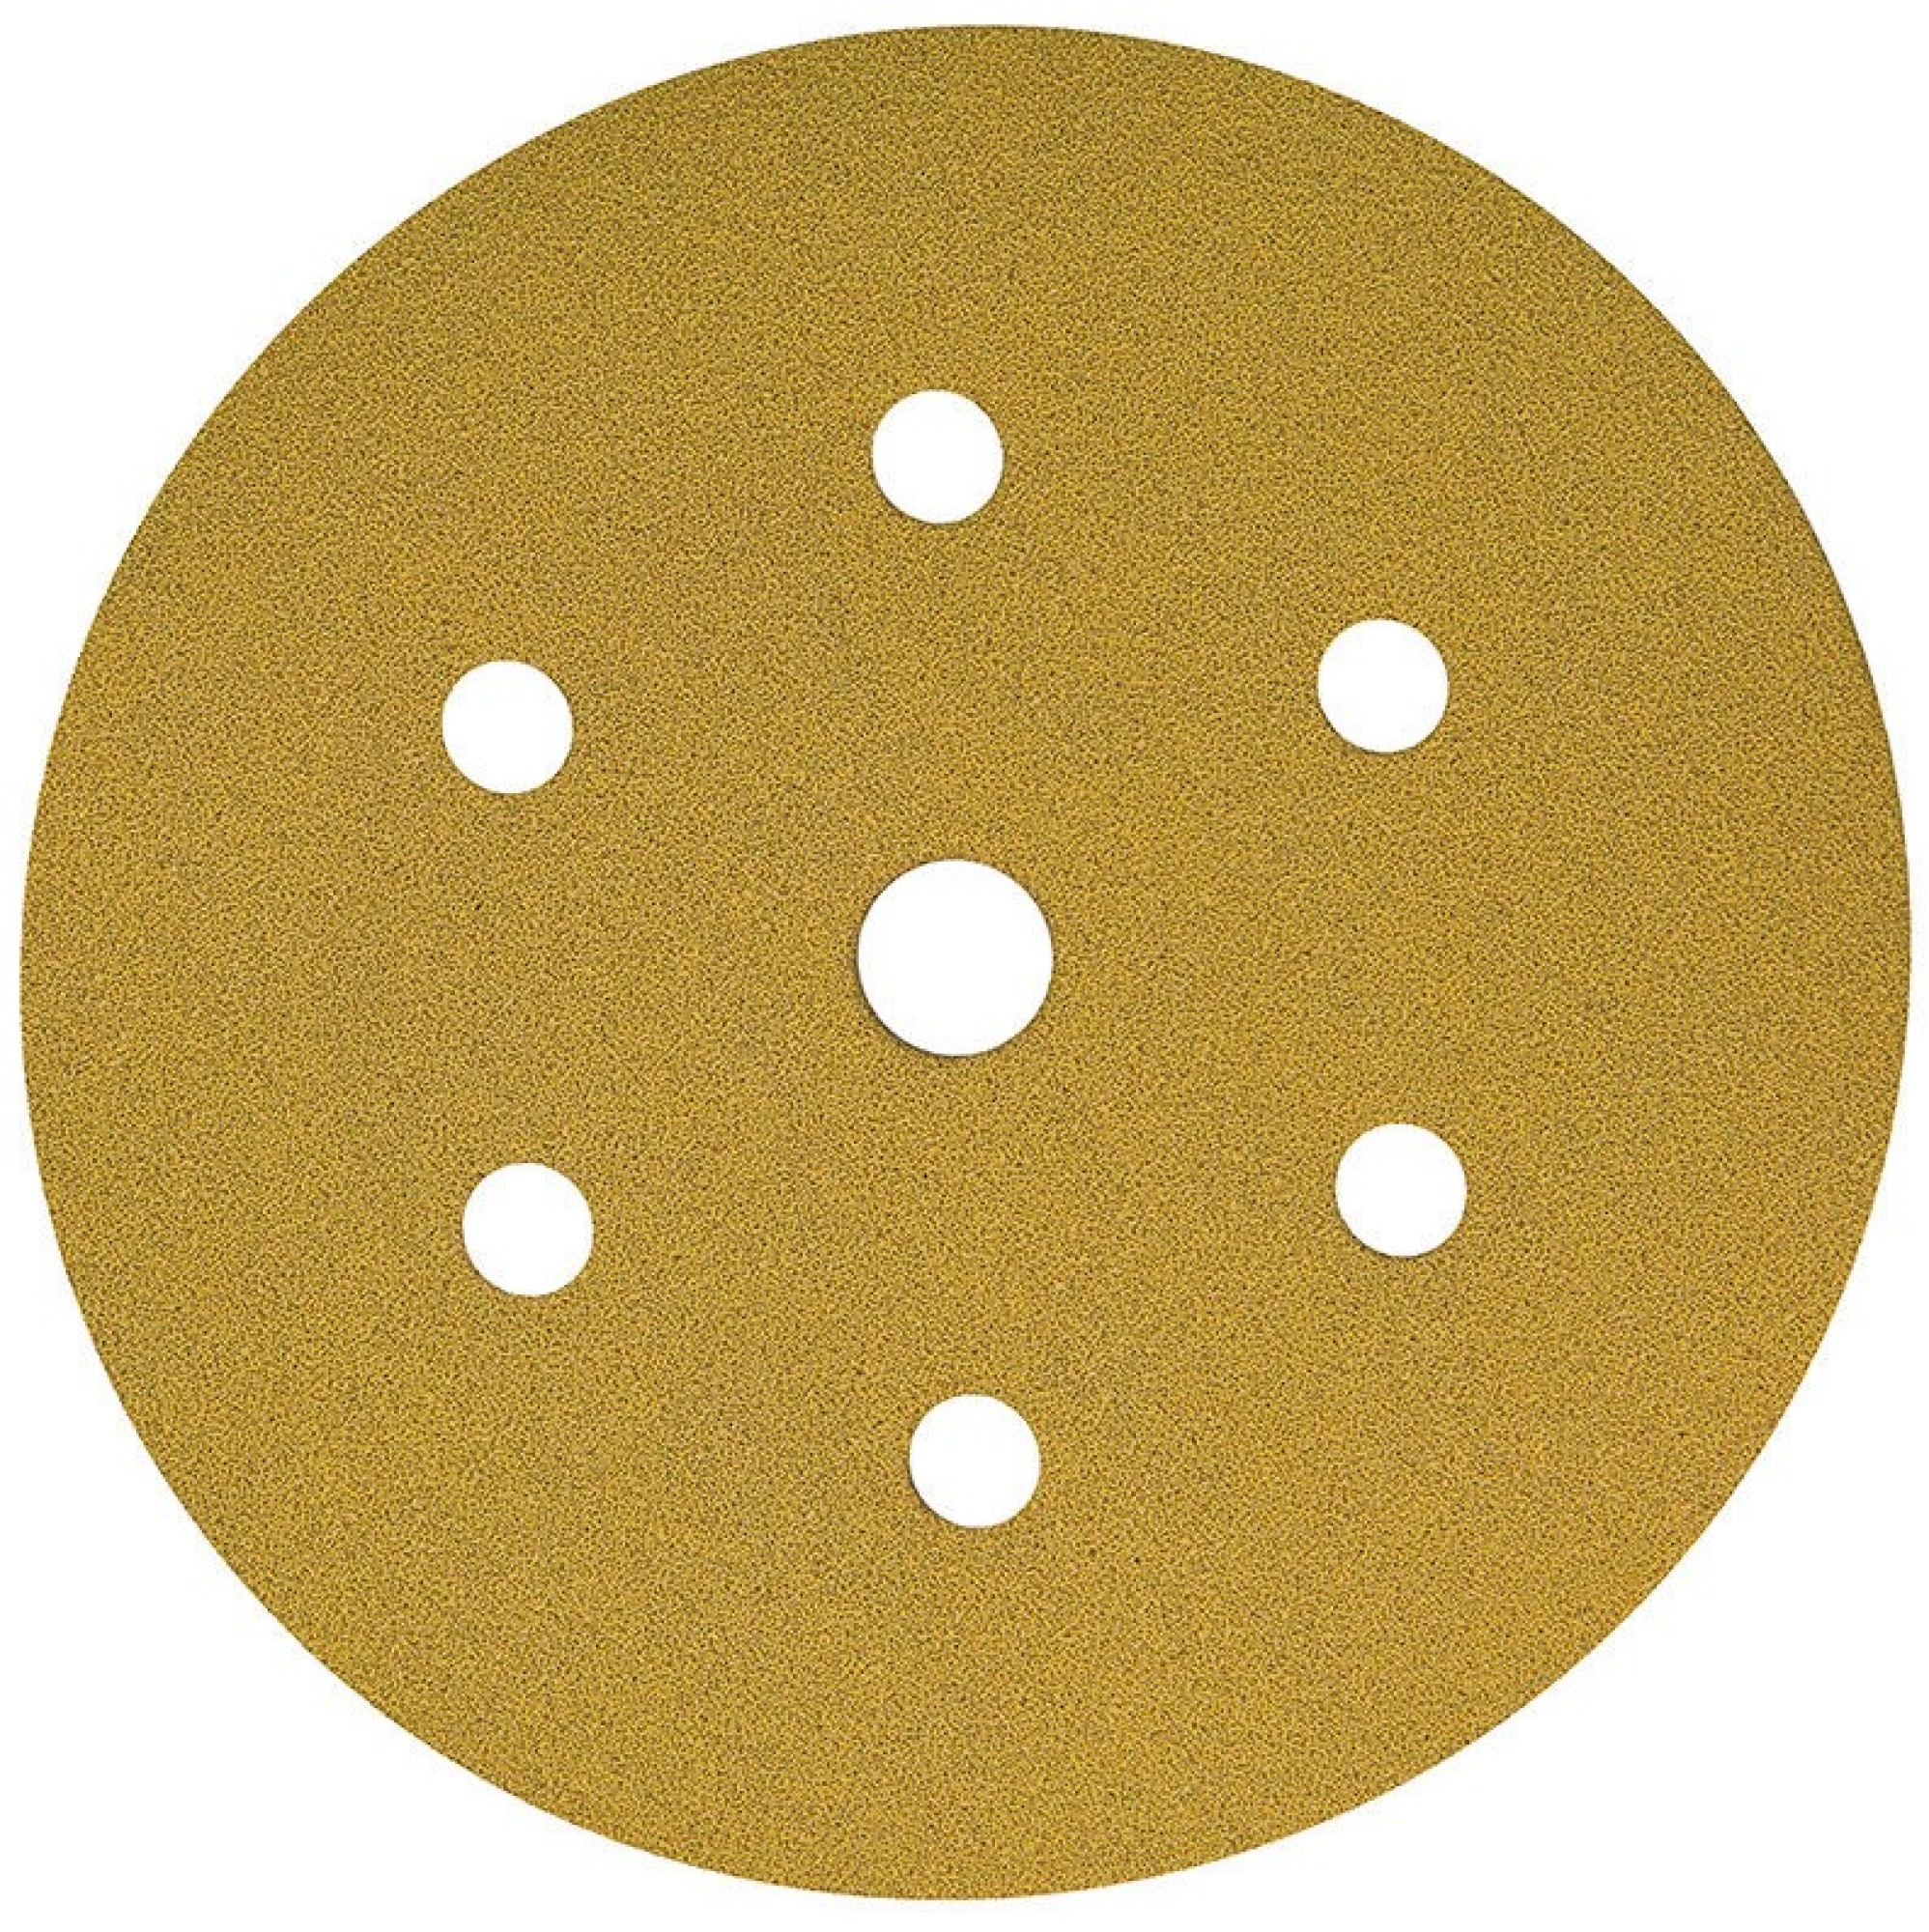 Mirka® Gold 2362809932, Ø 150 mm, P320, 7-fach gelocht, Kletthaftend, Schleifscheibe mit Aluminiumkorn